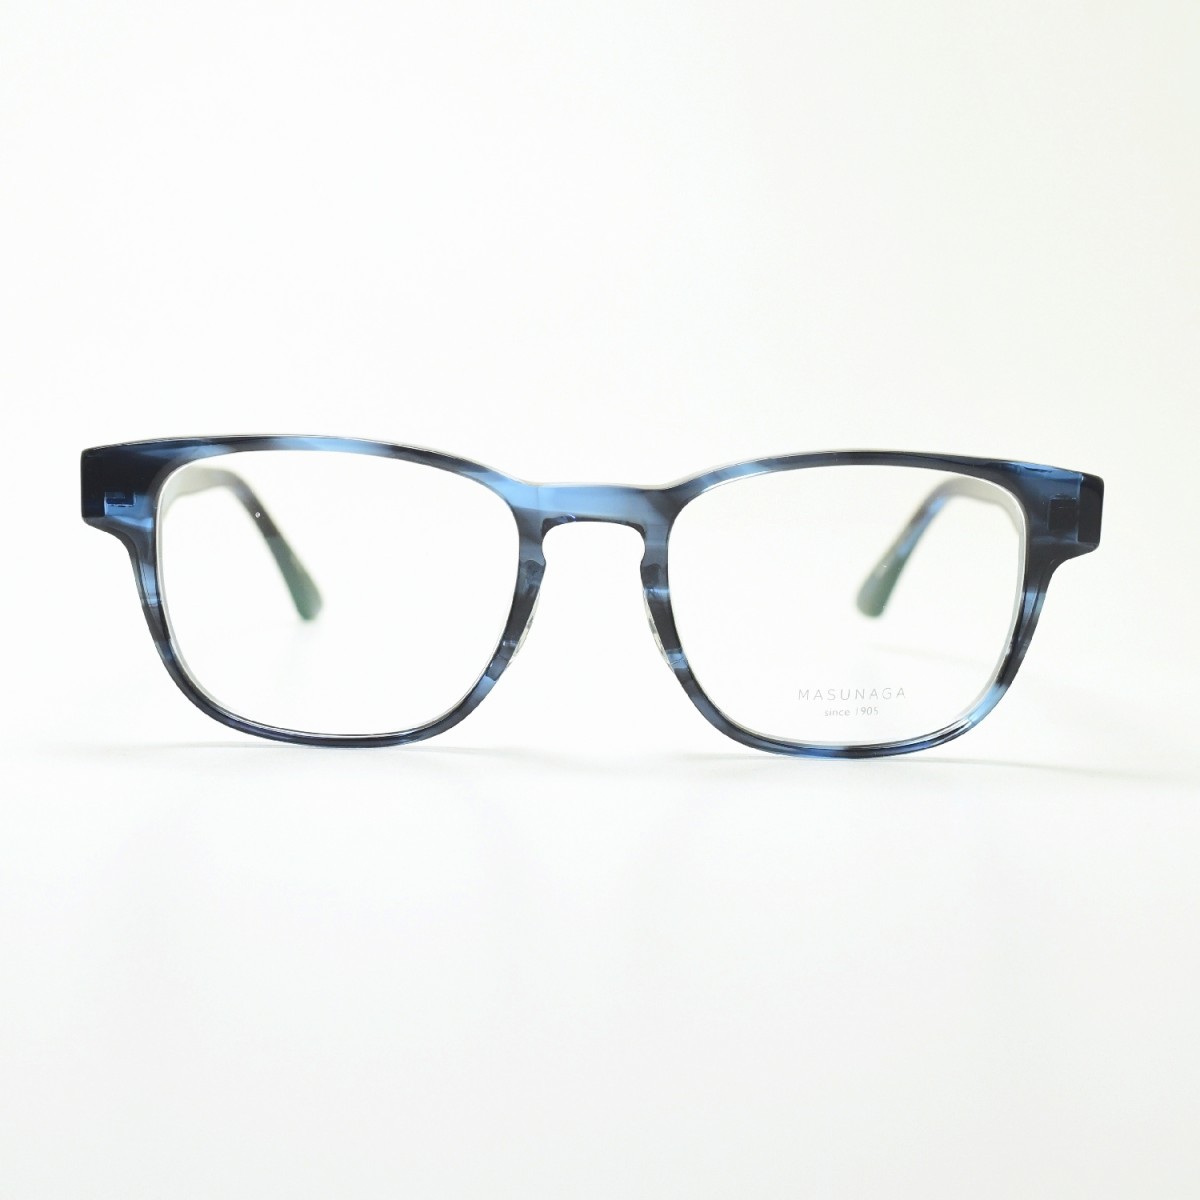 増永眼鏡 MASUNAGA 光輝 063 col-35 BLUE メガネ 眼鏡 めがね メンズ 